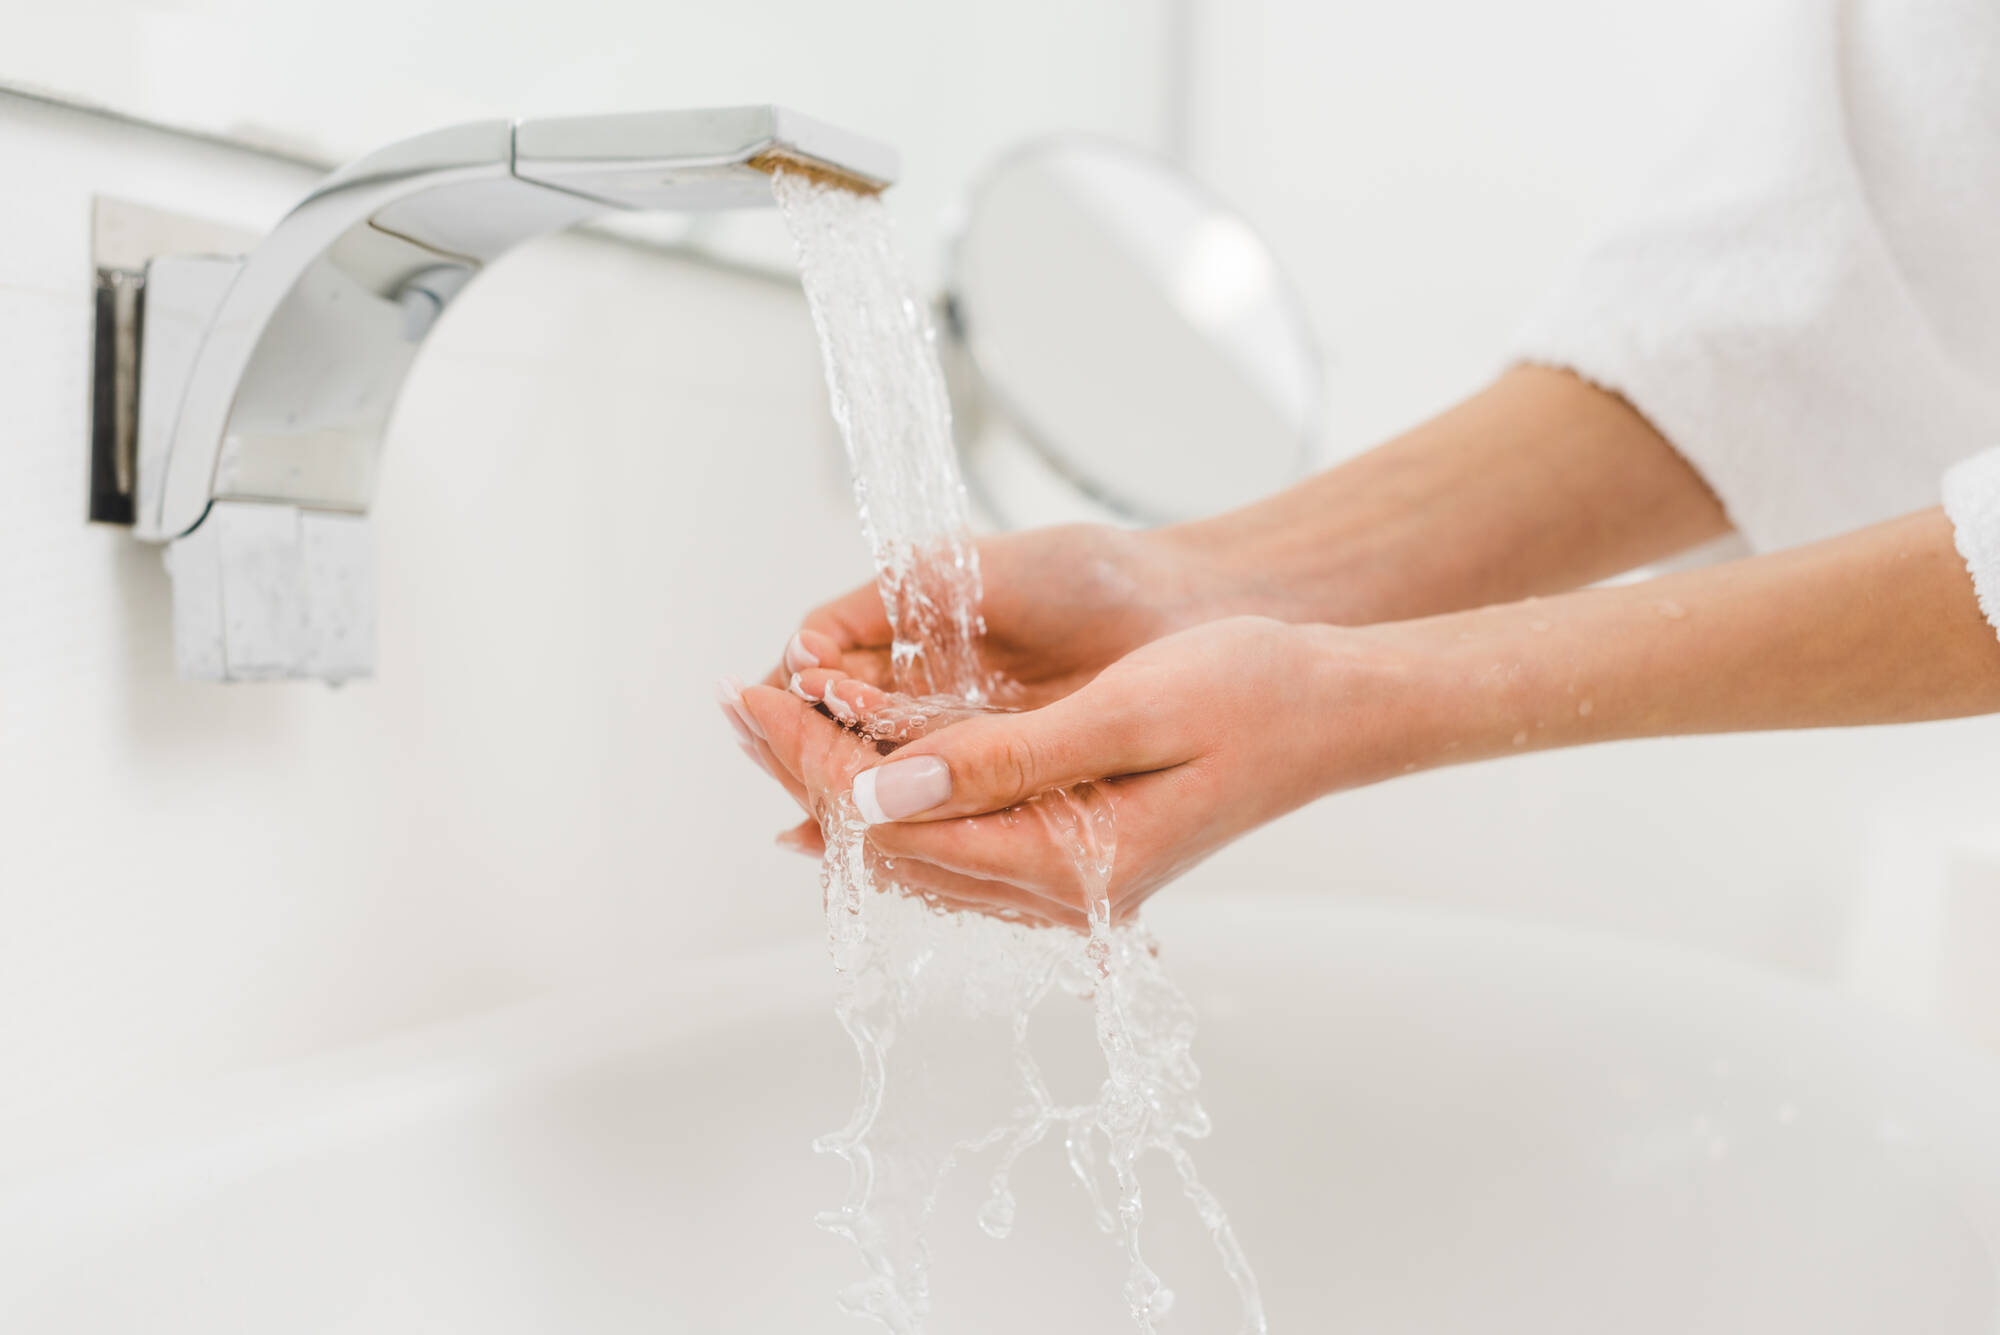 Горячей воды а также. Мытье рук. Гигиена рук. Девушка моет руки. Отключение воды.